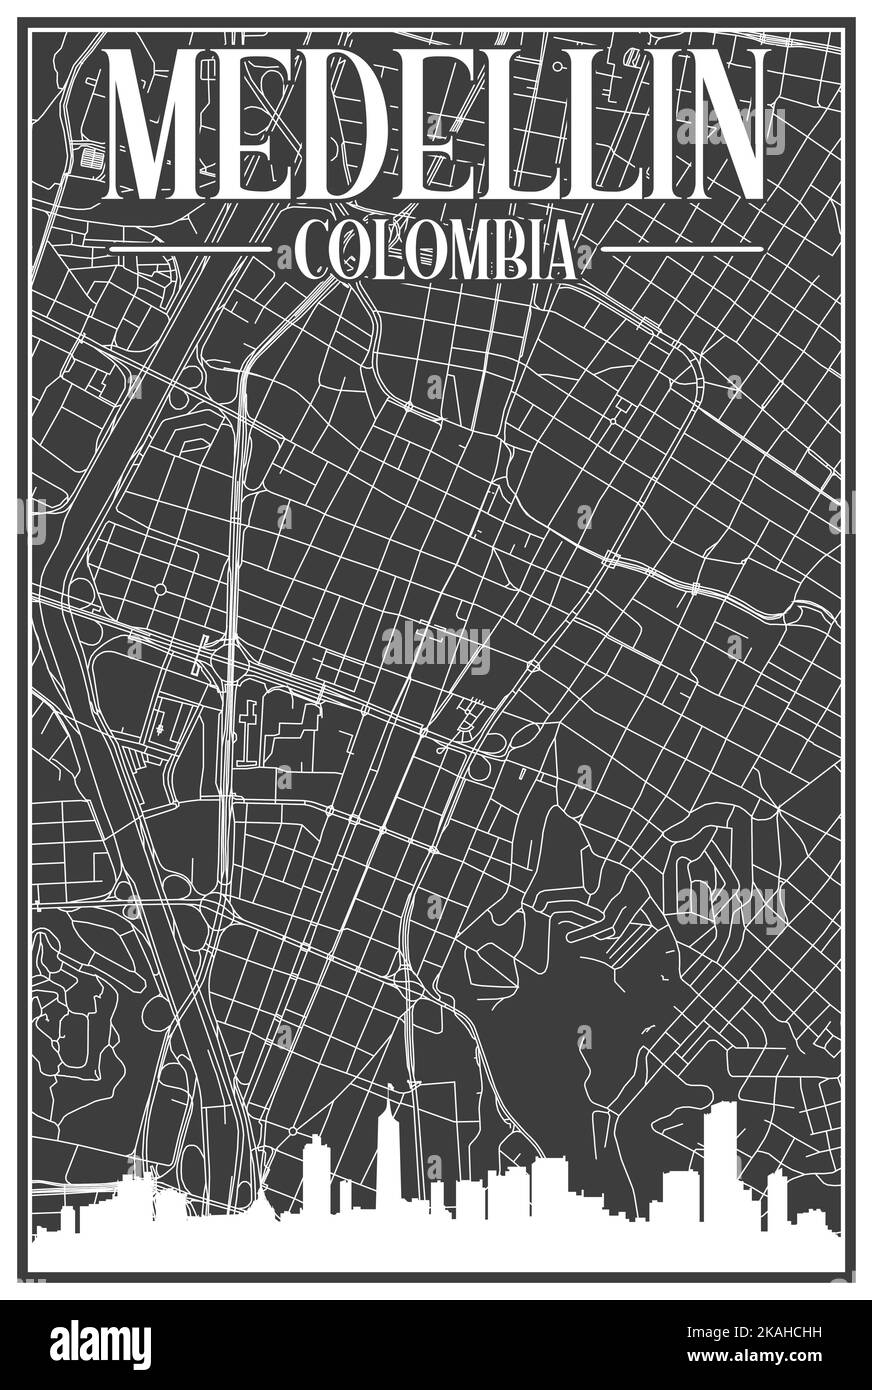 Carte du réseau des rues du centre-ville DE MEDELLIN, COLOMBIE, imprimée à la main, d'époque noire, avec des gratte-ciel et des lettres en relief Illustration de Vecteur